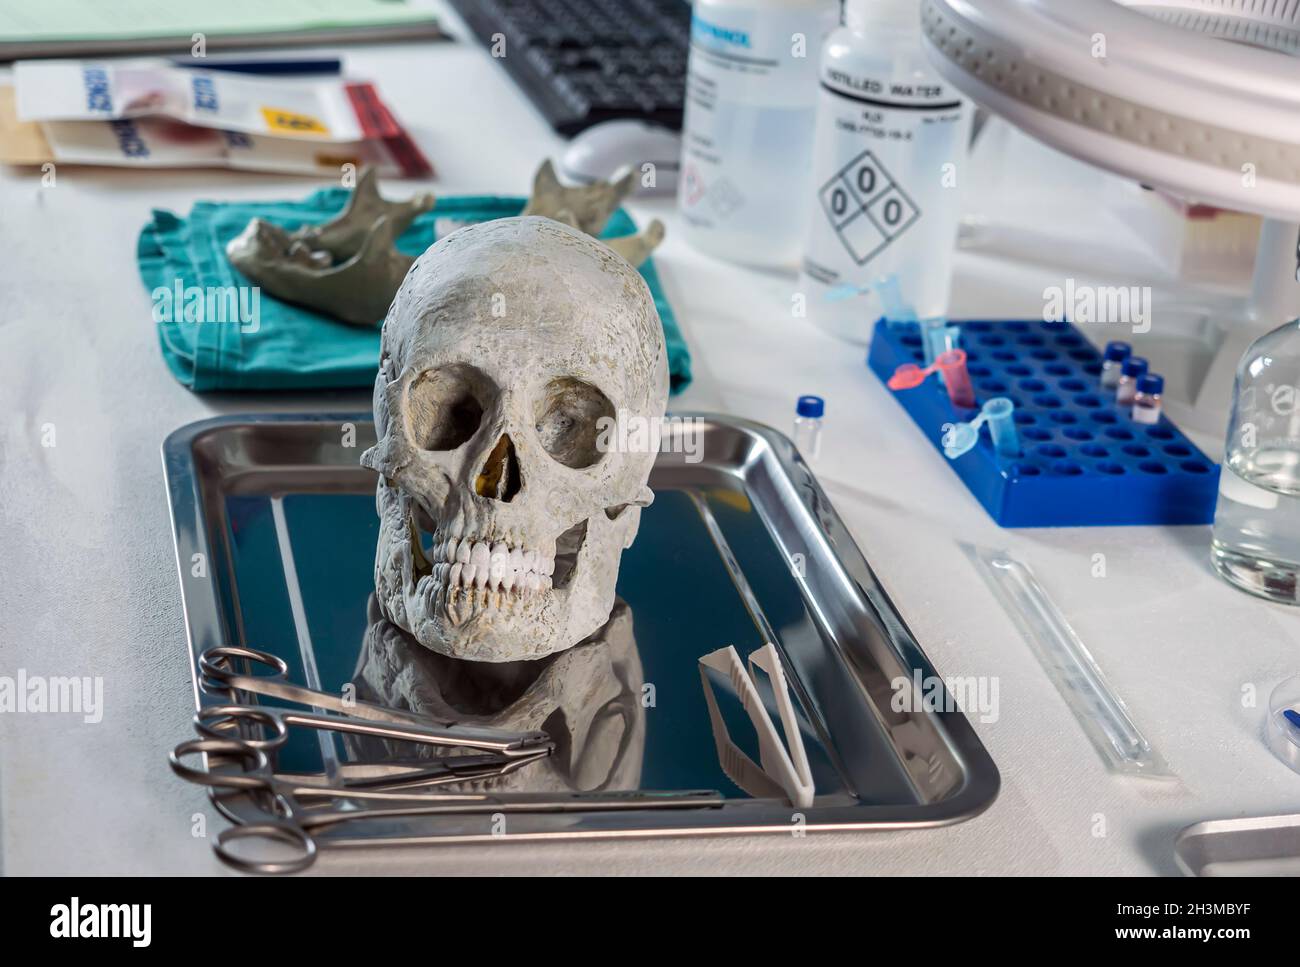 Crâne humain d'un adulte assassiné dans un laboratoire médico-légal, image conceptuelle Banque D'Images